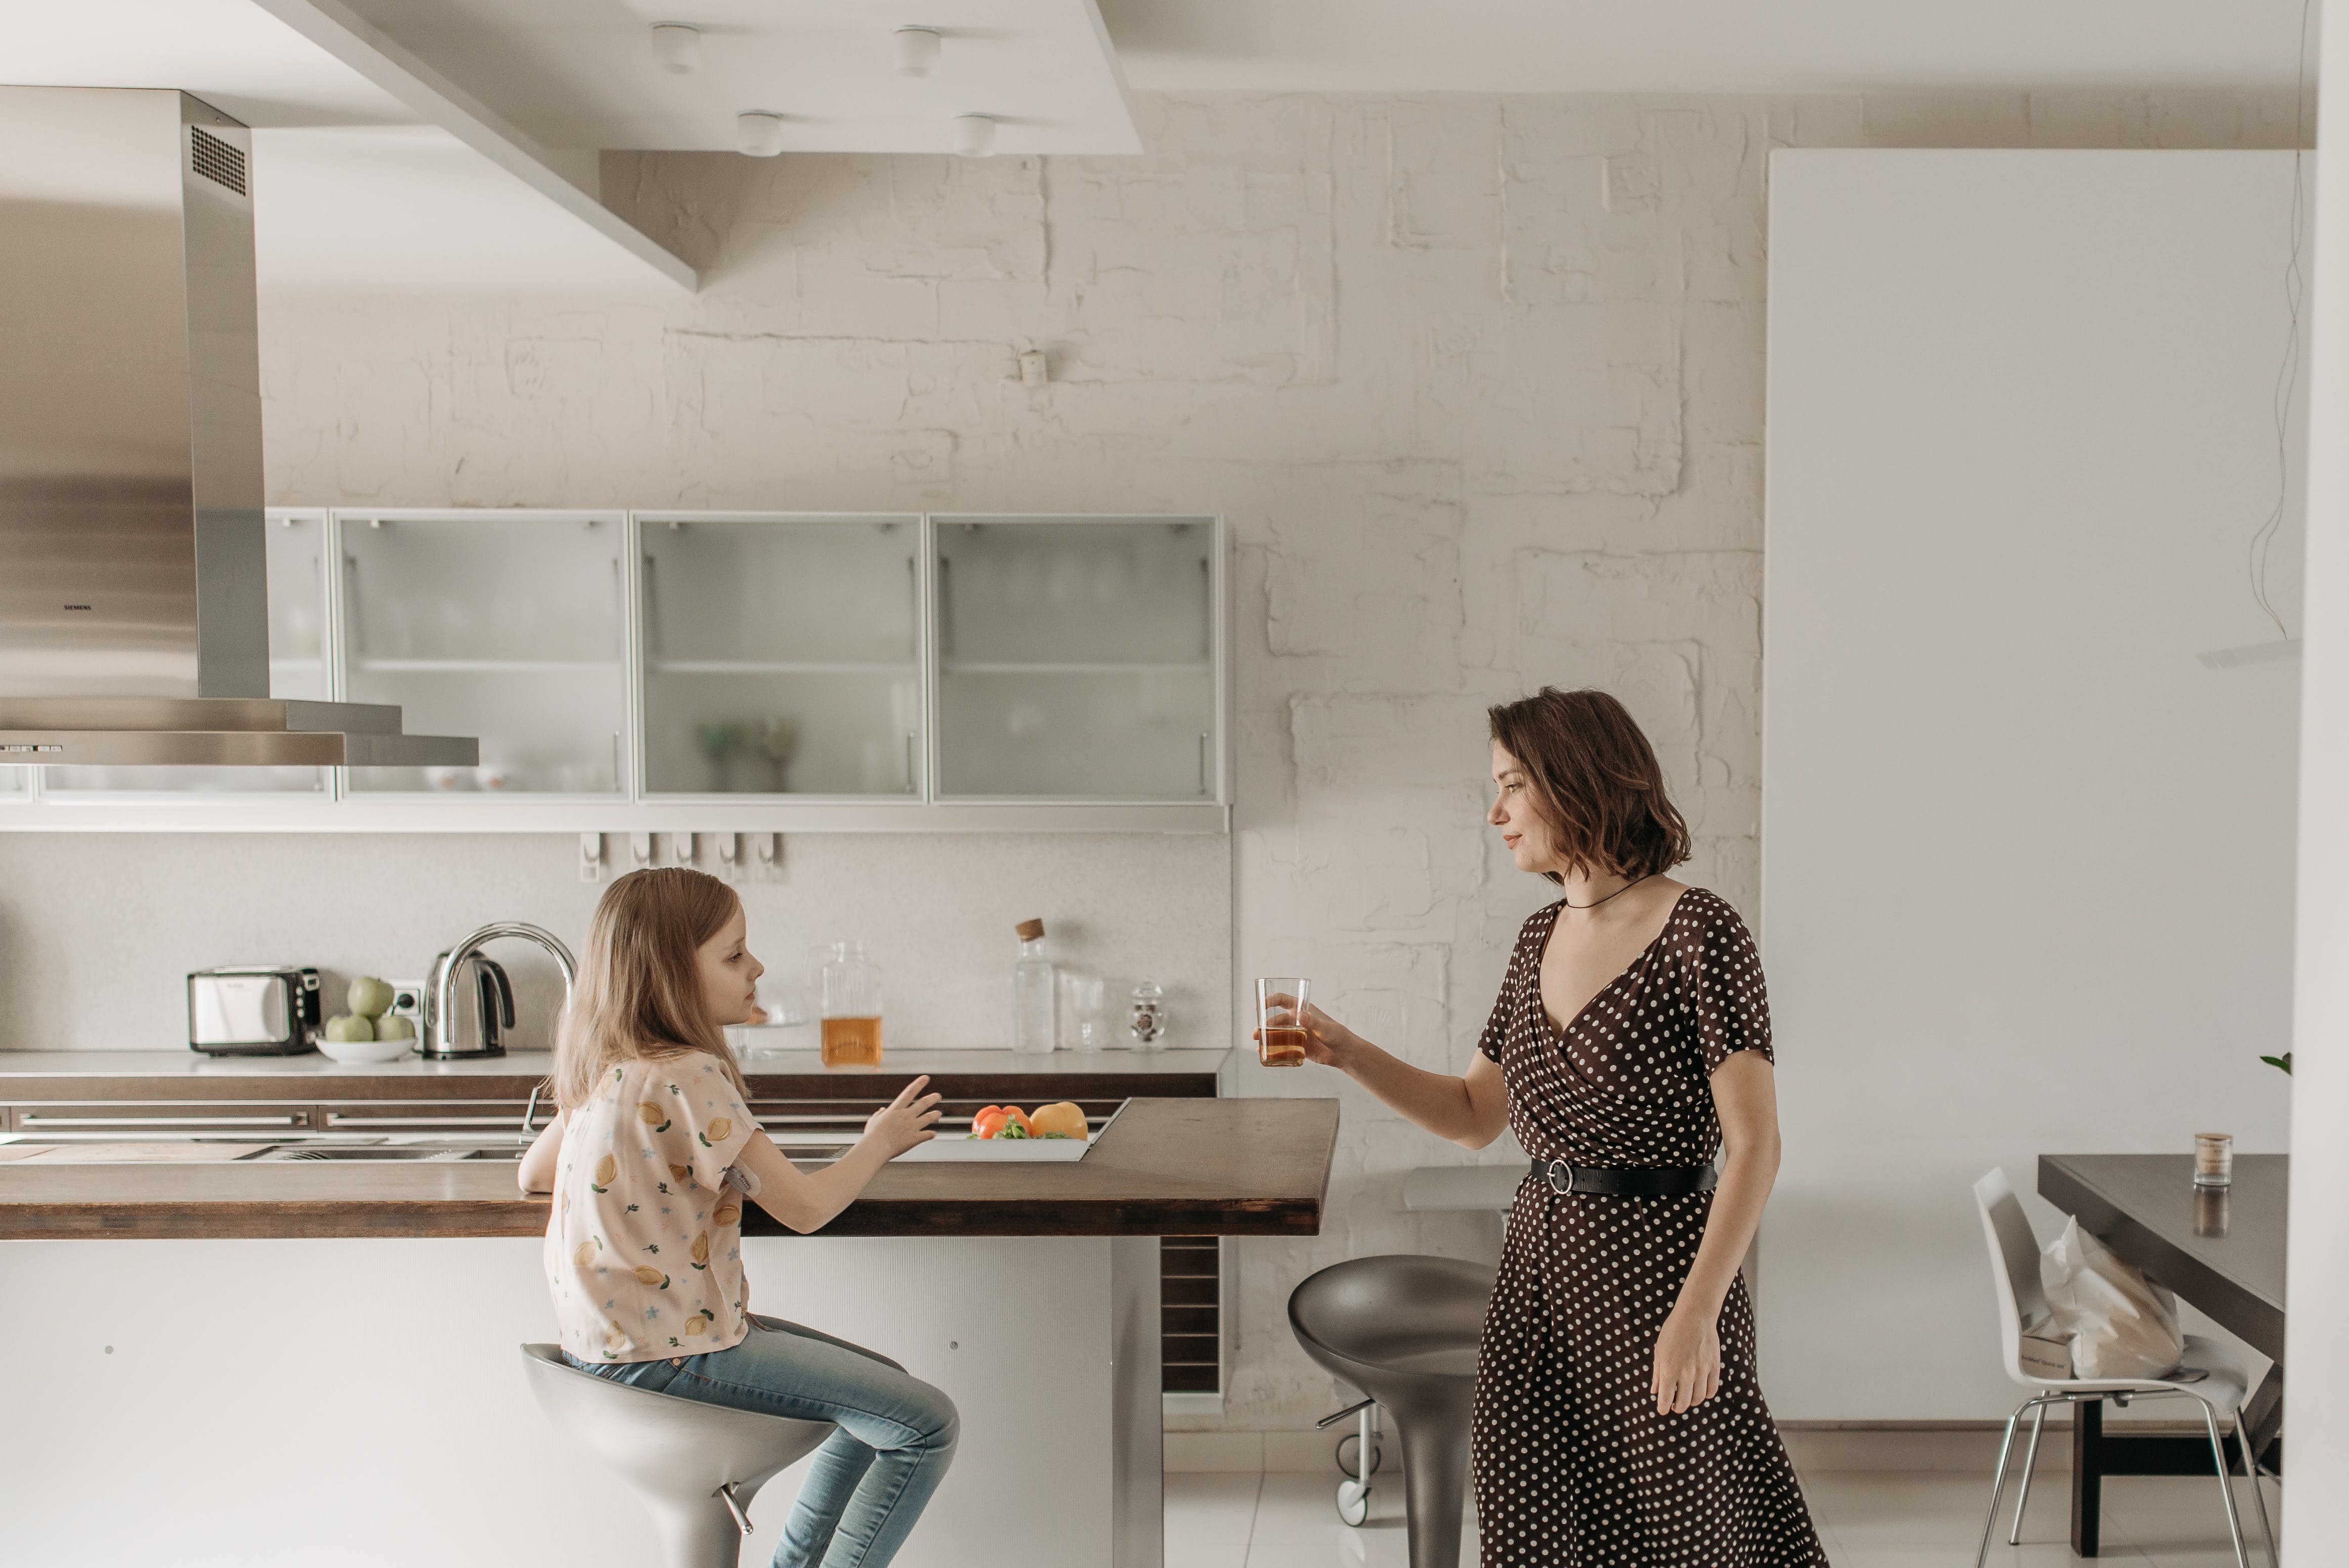 Mère et fille dans une cuisine moderne | Source : Pexels